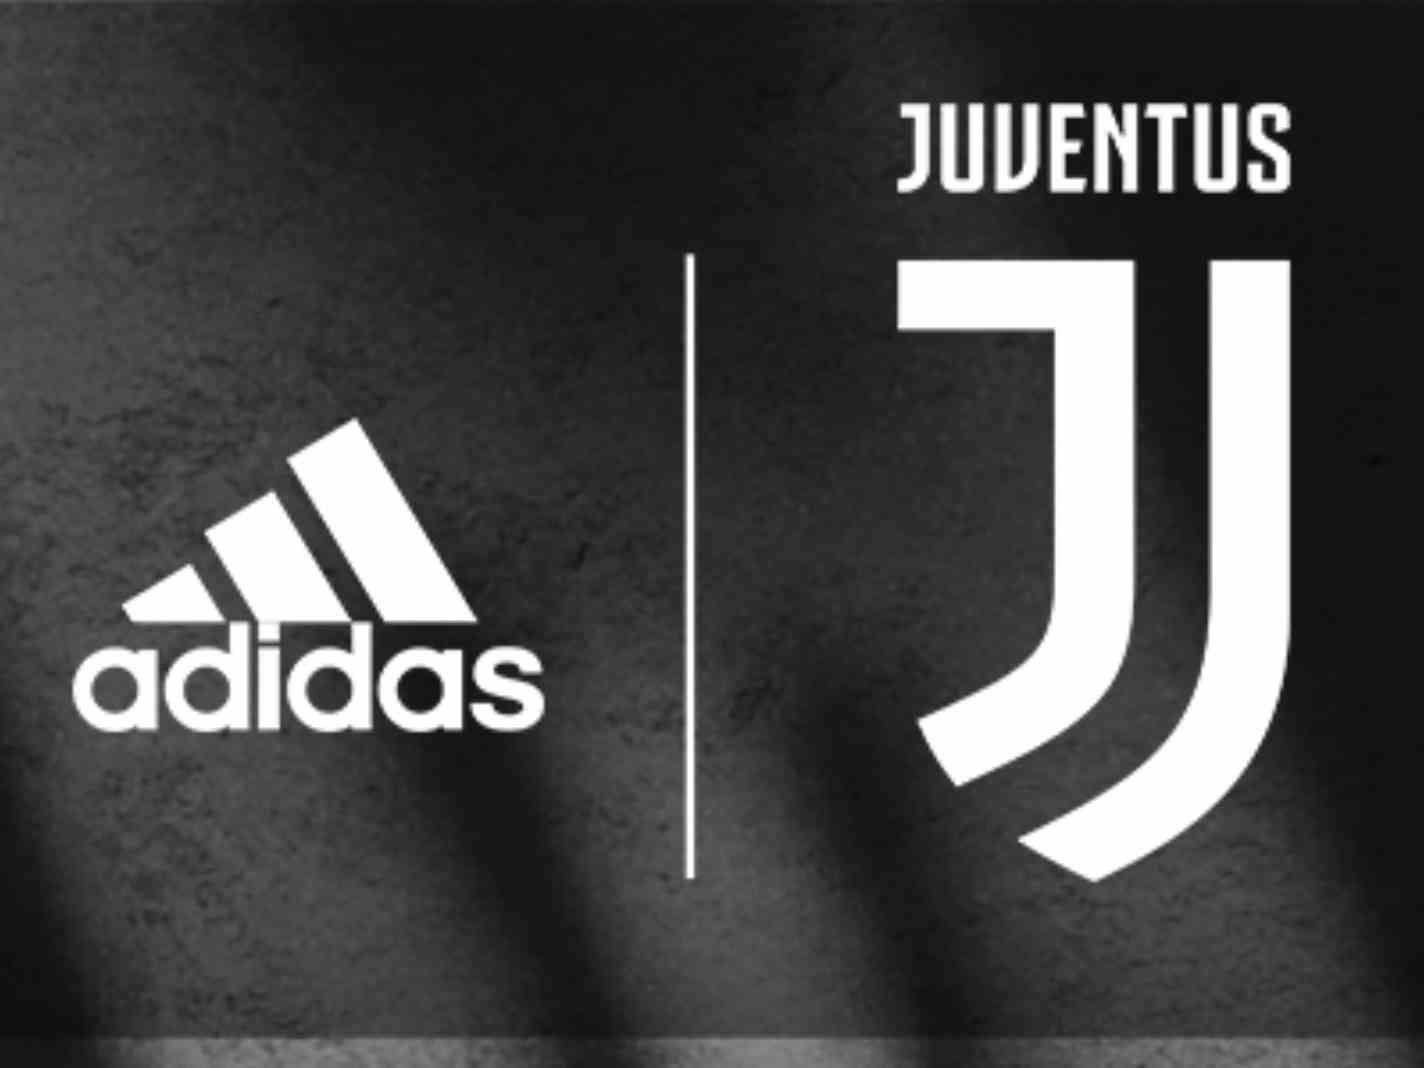 Juventus 23/24 Third Kit Leak: An Upgrade or Too Bland?